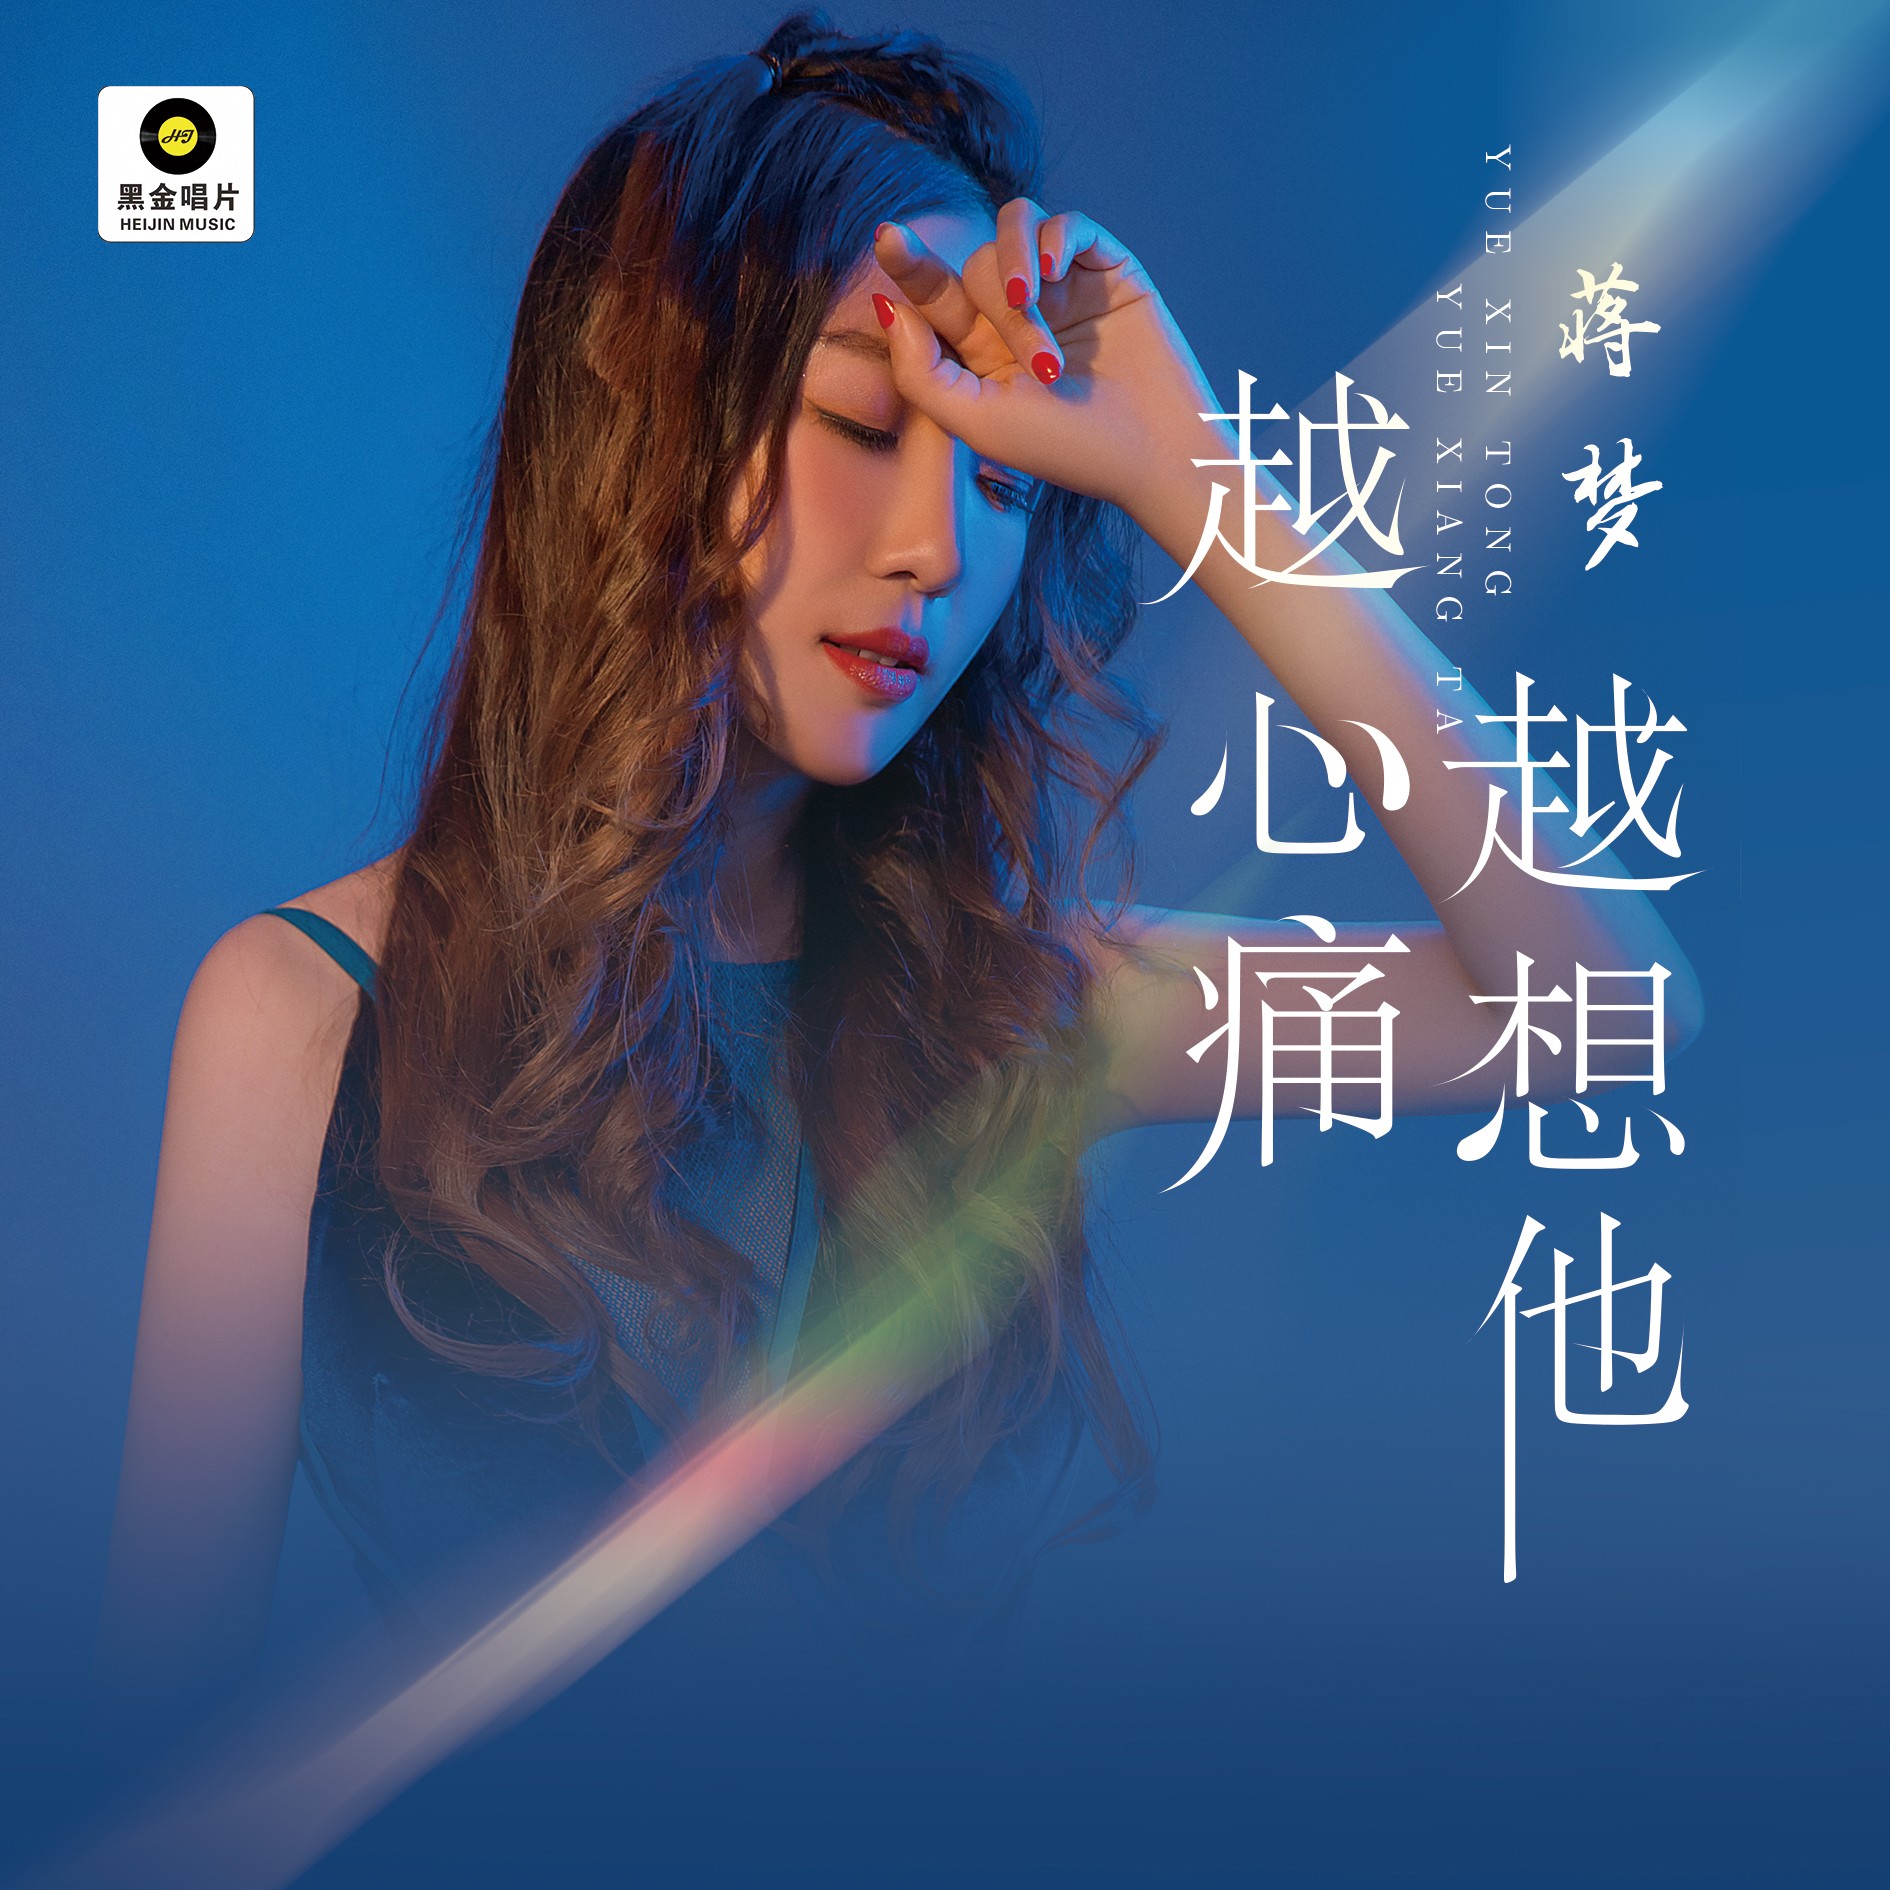 ‎《越想越心痛 (录音室版) - Single》- 王紫晗的专辑 - Apple Music